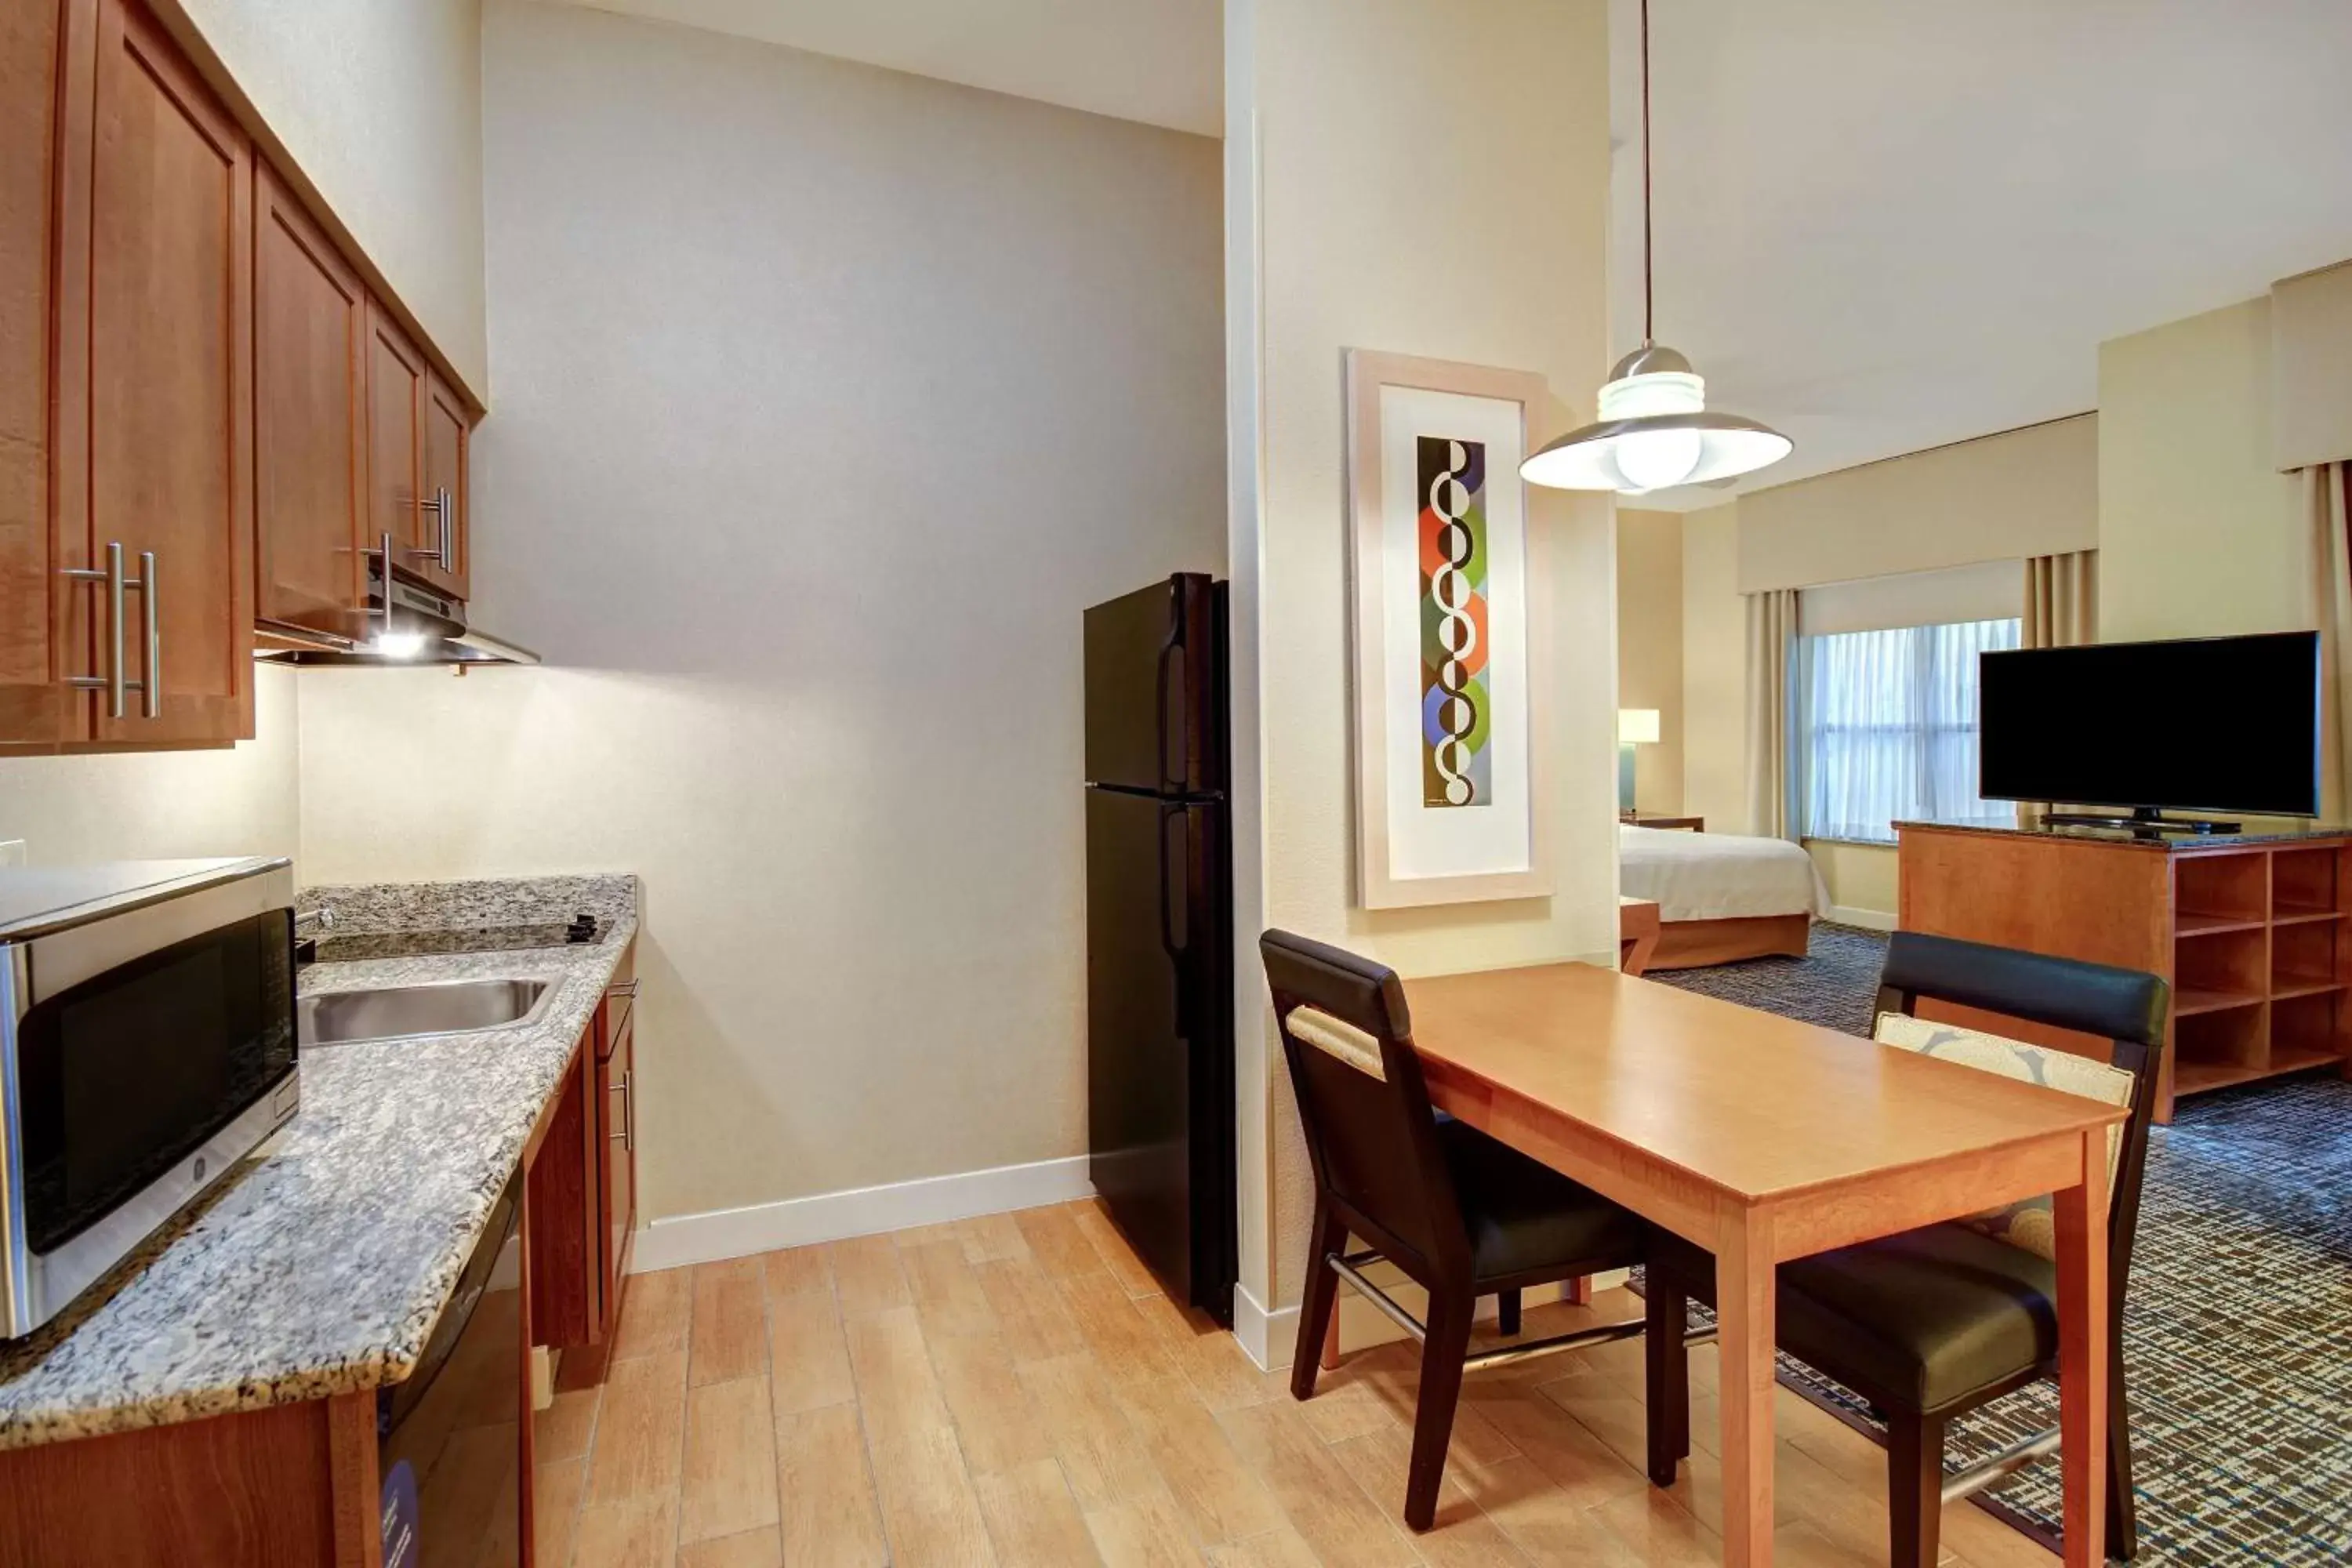 Kitchen or kitchenette, Kitchen/Kitchenette in Homewood Suites Dallas-Frisco